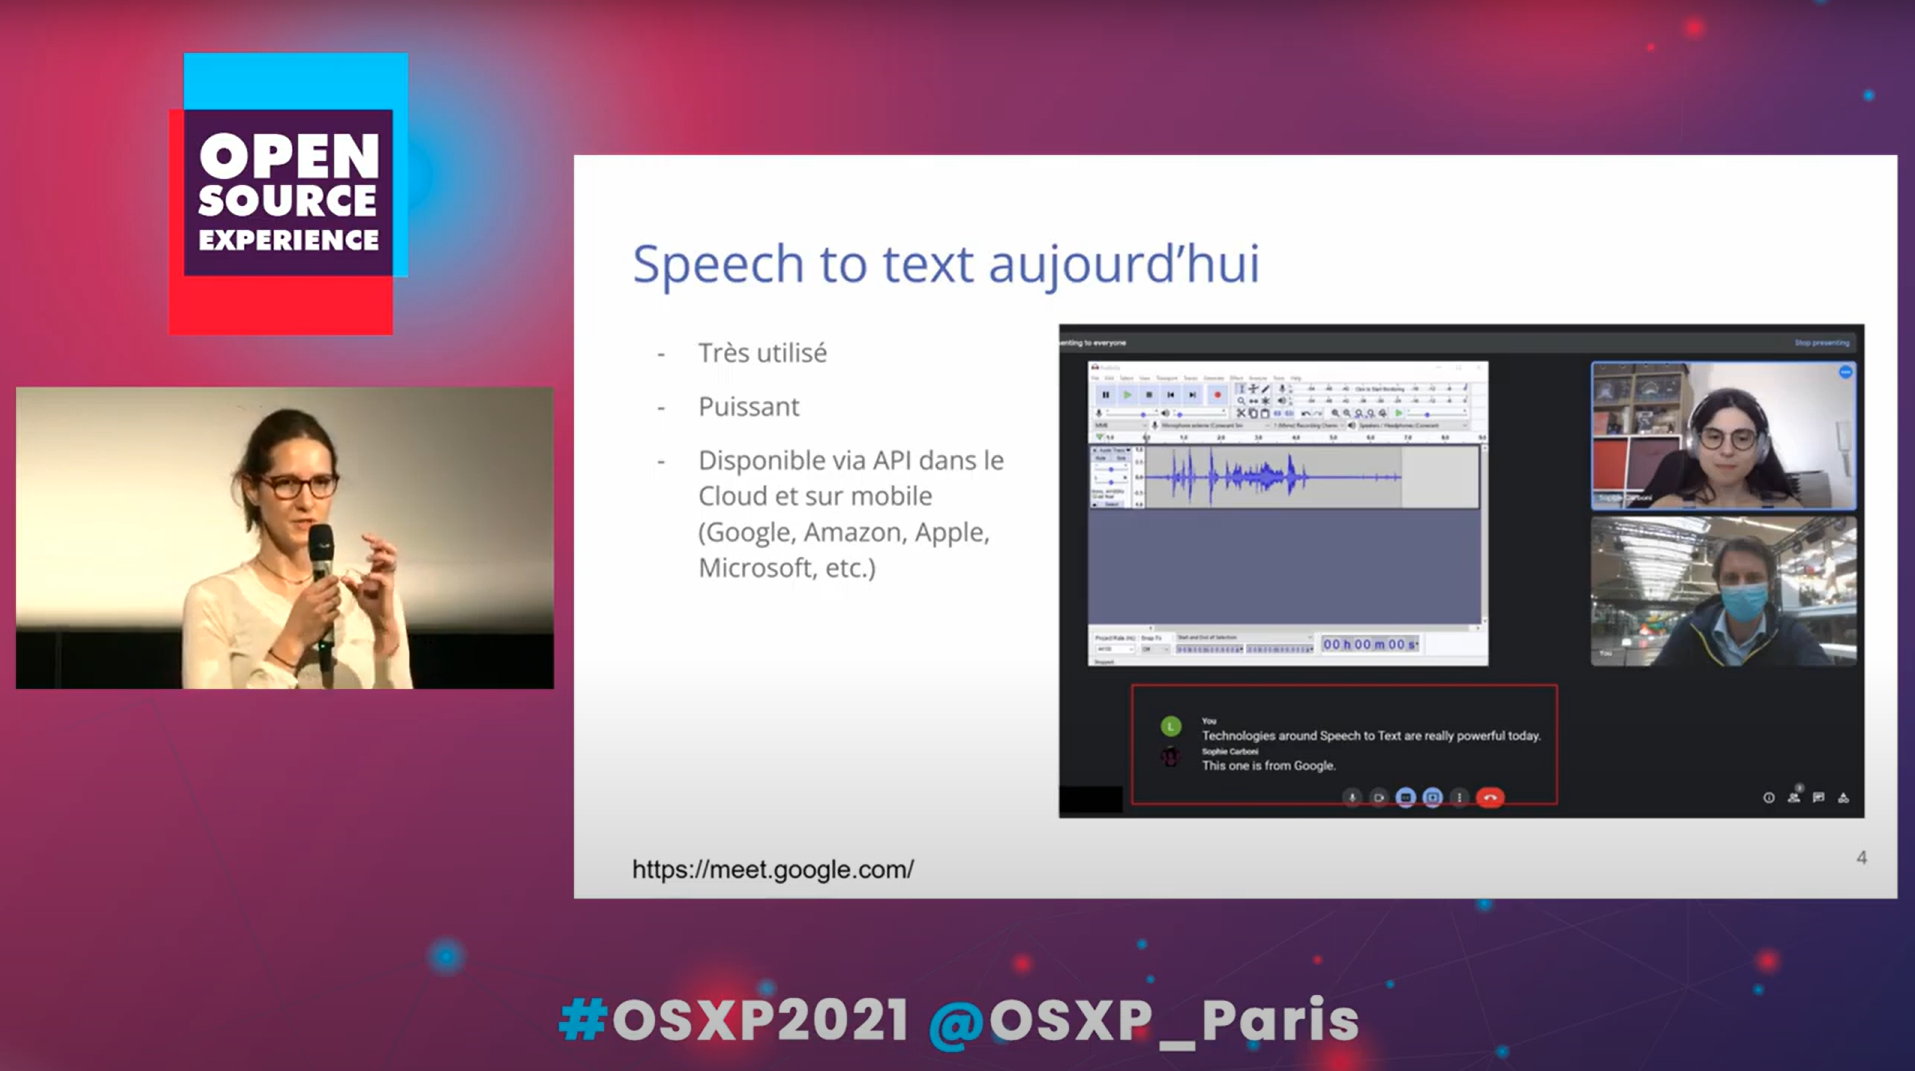 De la voix au texte, la puissance de l'écosystème Open Source - retour sur la conférence OSXP